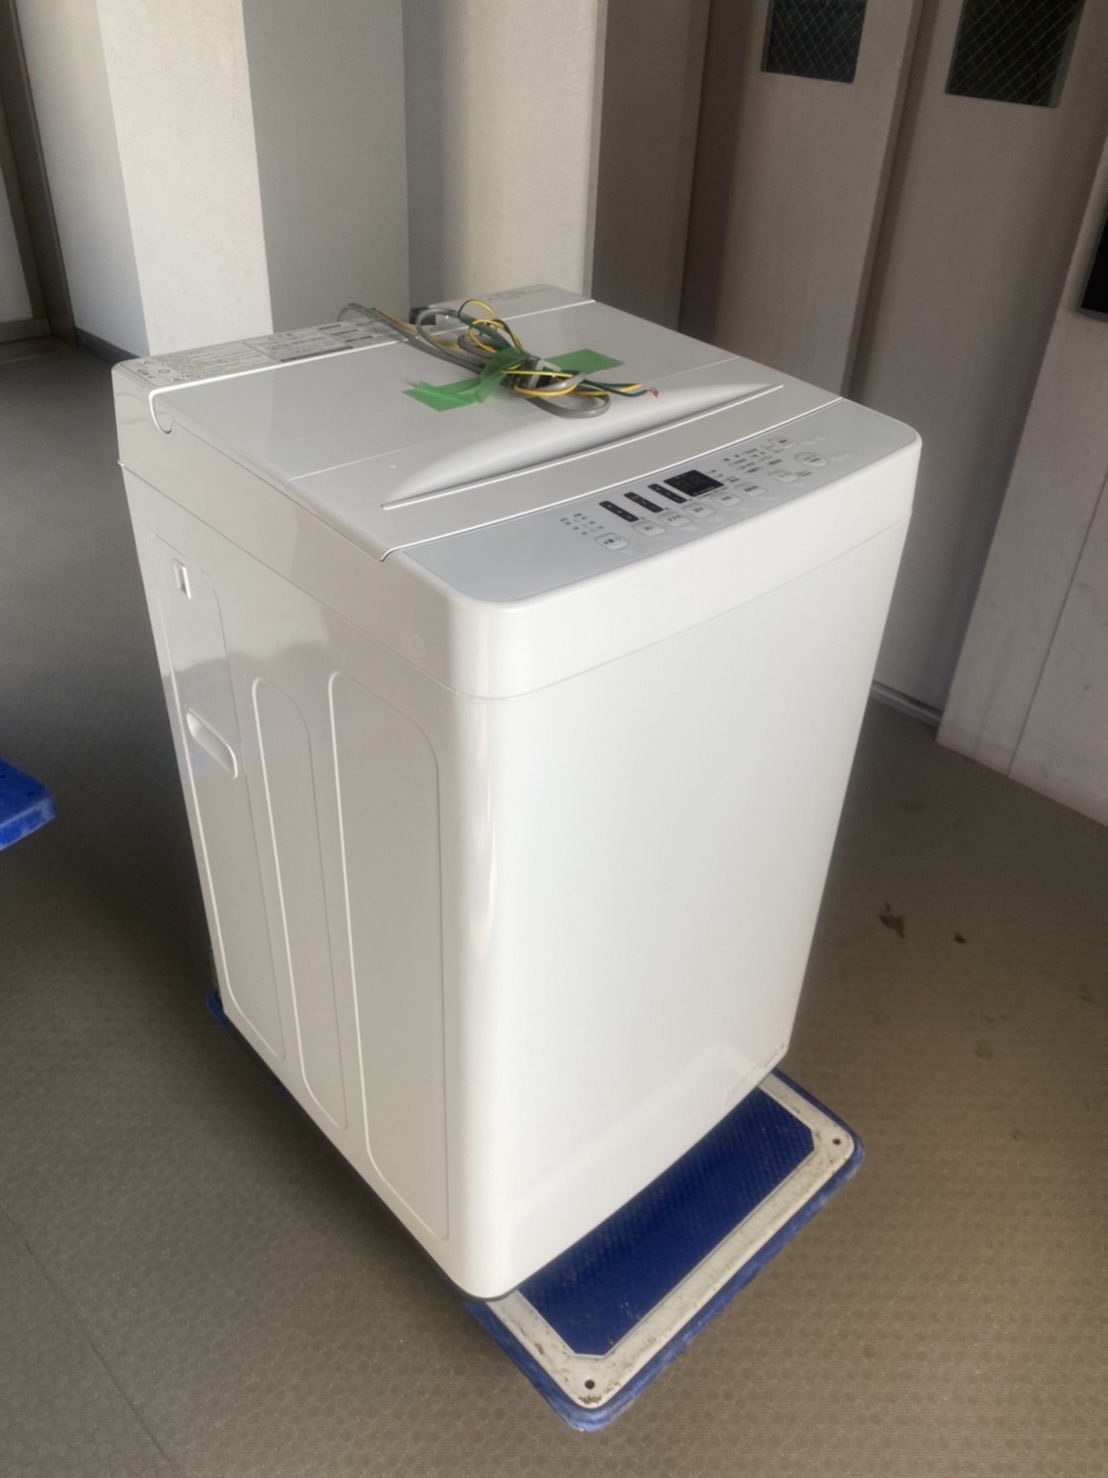 アマダナ 2022年製 全自動洗濯機 5.5kg AT-WM5511-WH ホワイト/白色 